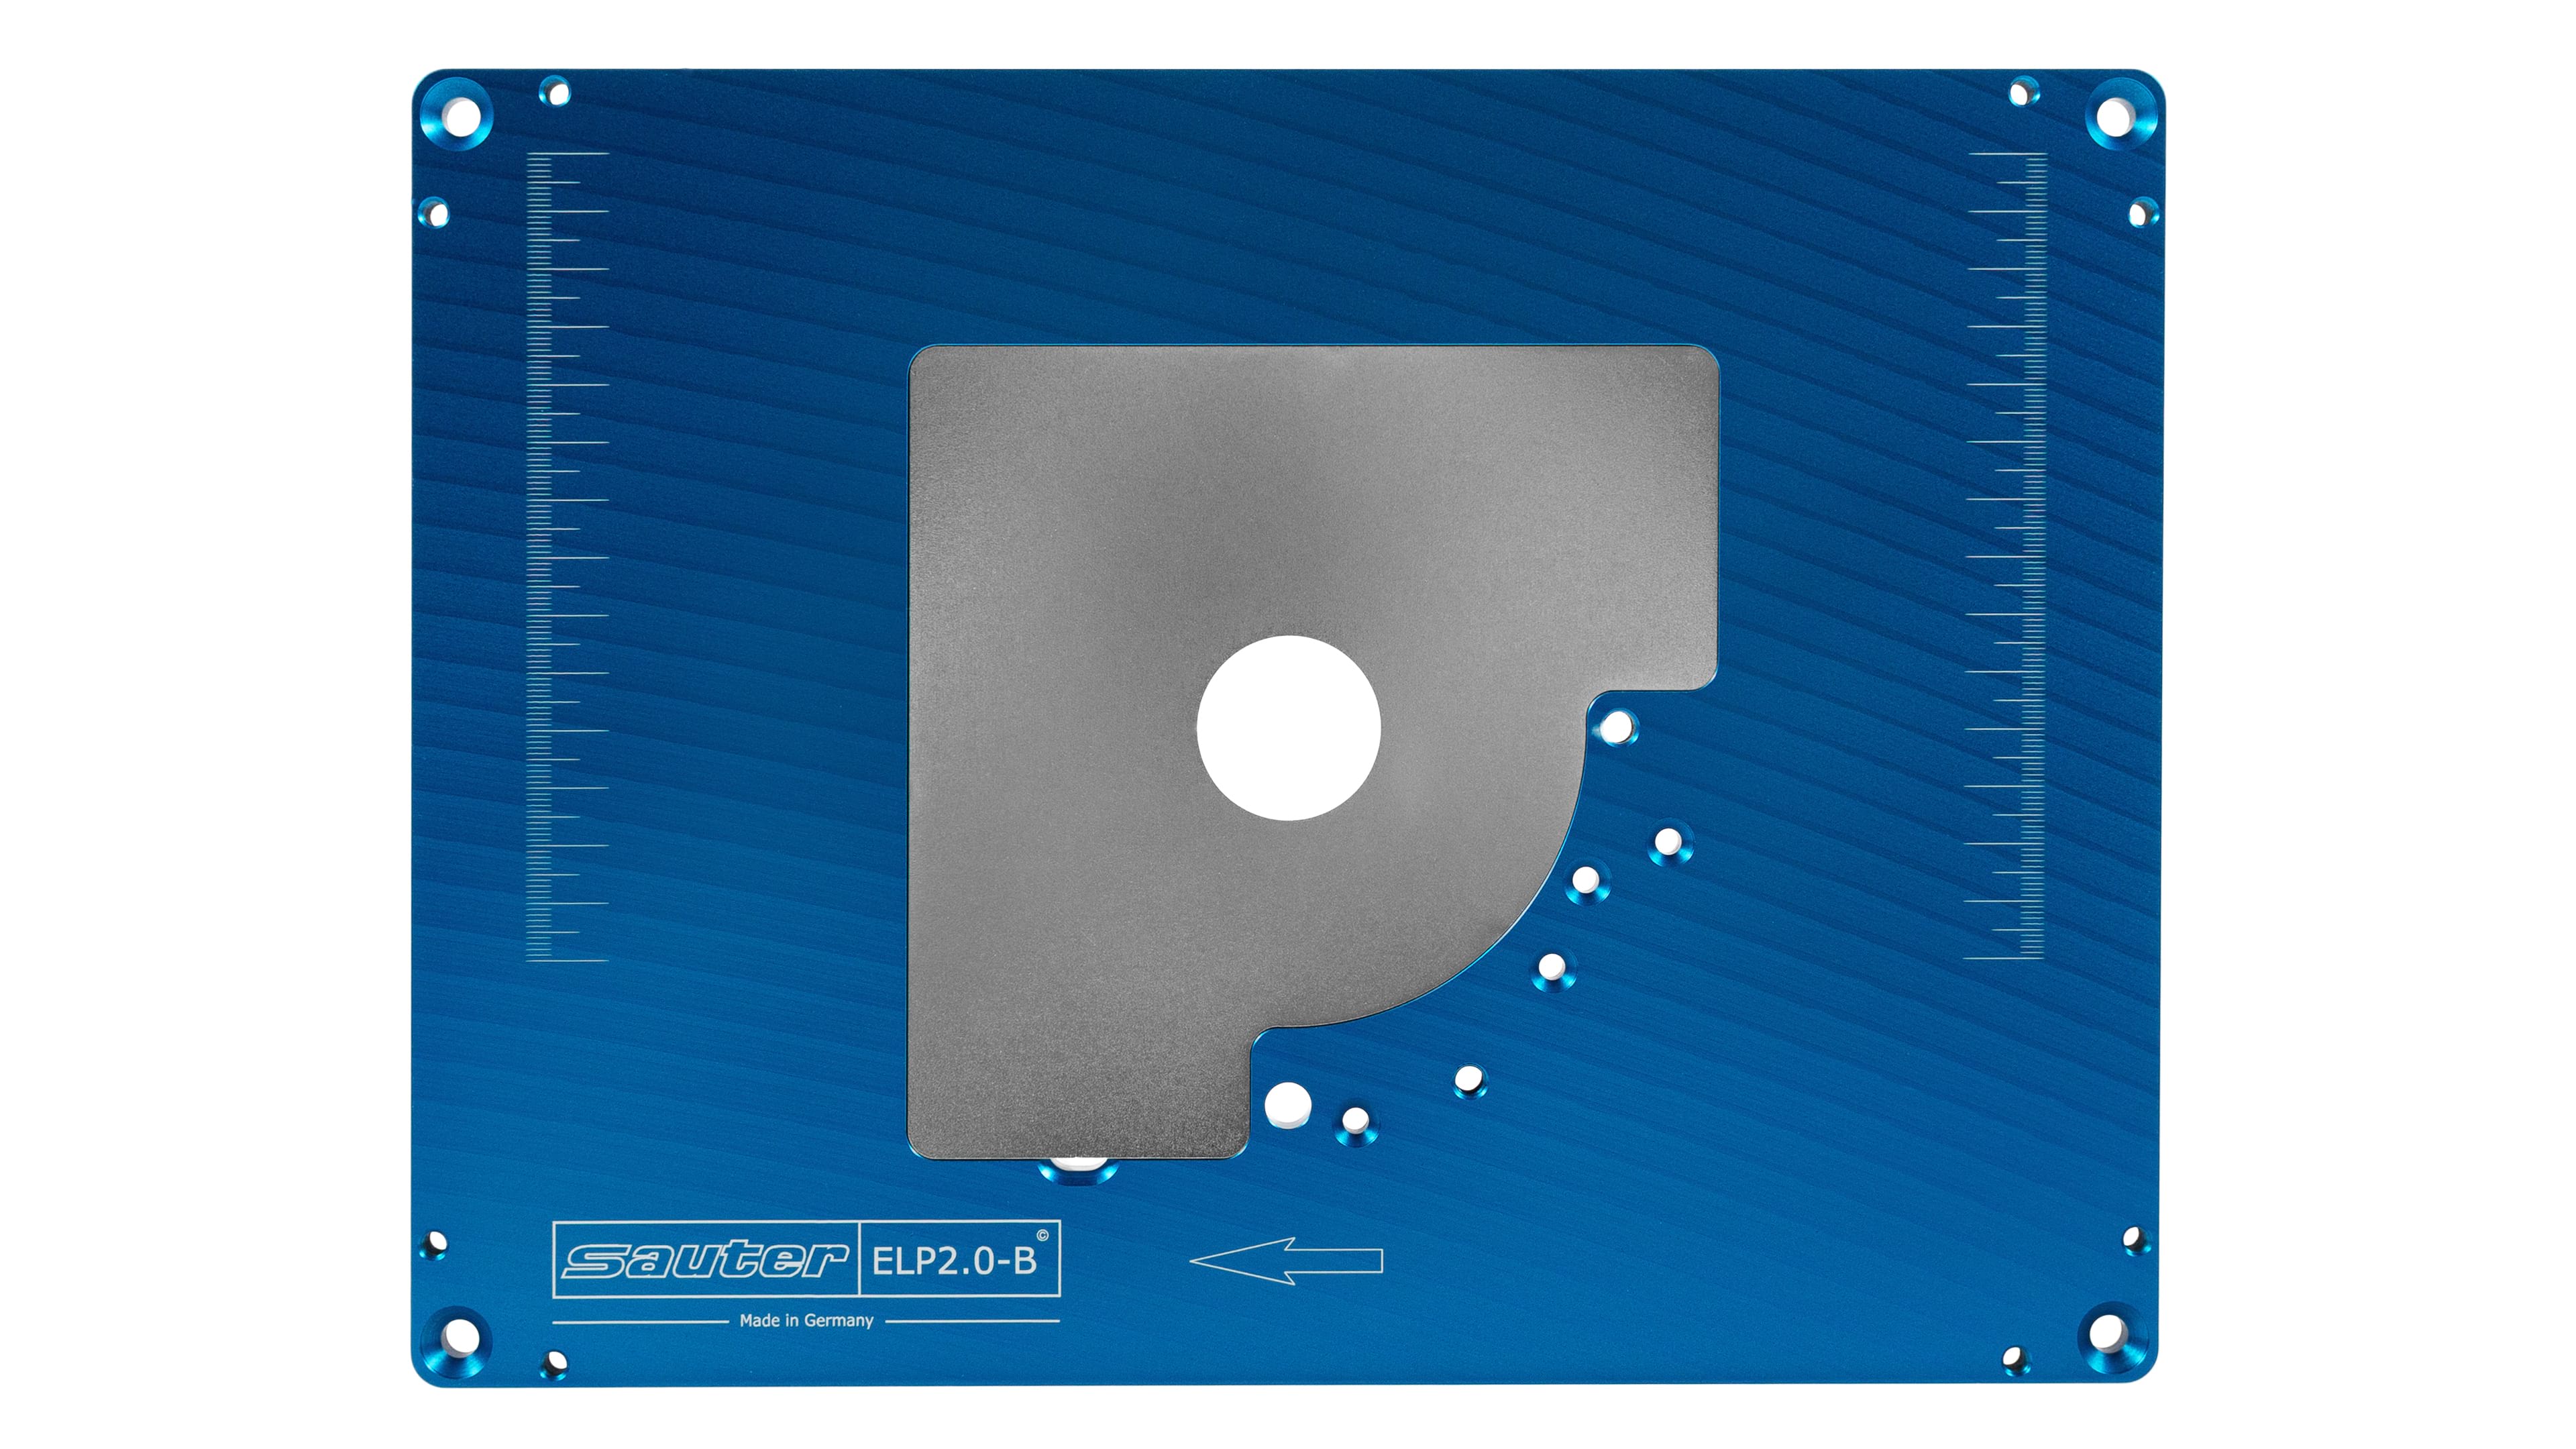 Alu fijación placa einlegeplatte para frästisch Bosch gof 2000ce Professional